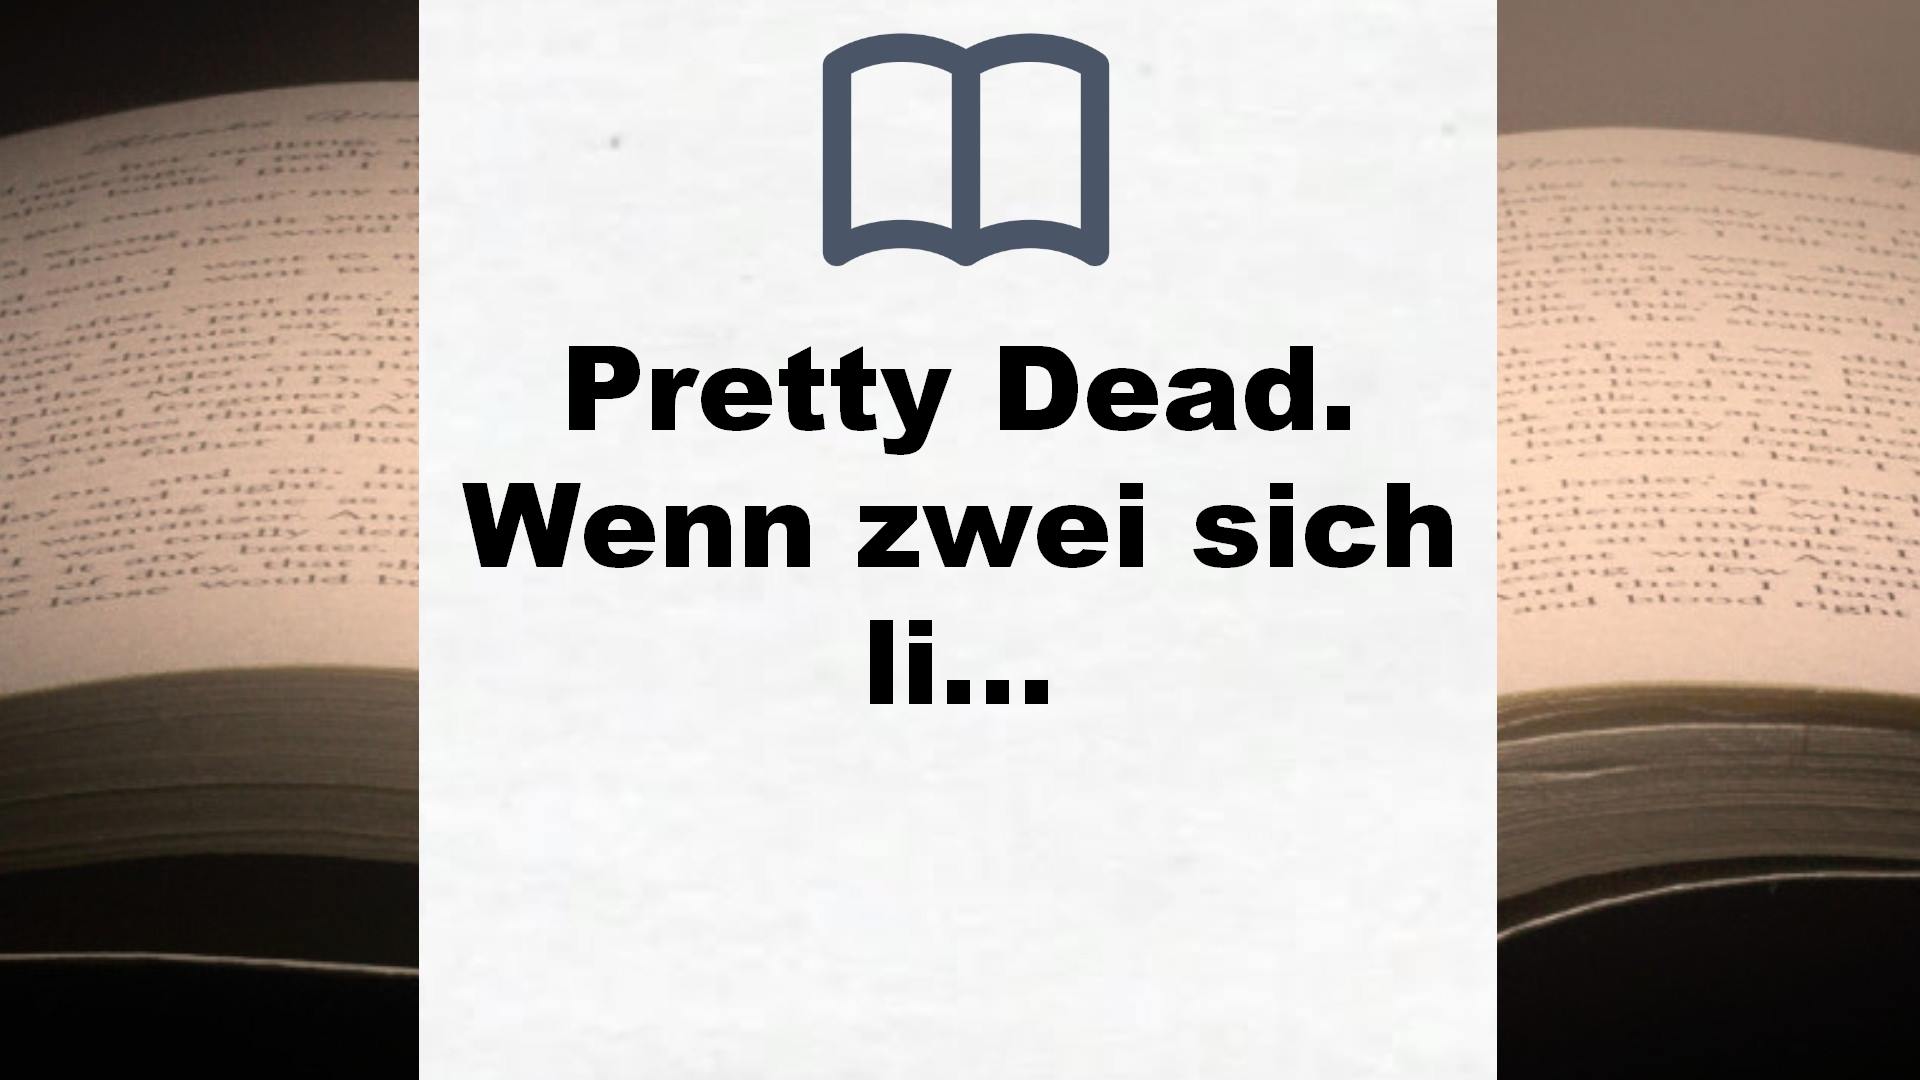 Pretty Dead. Wenn zwei sich lieben, stirbt die Dritte (Romantic Suspense meets Dark Academia) – Buchrezension